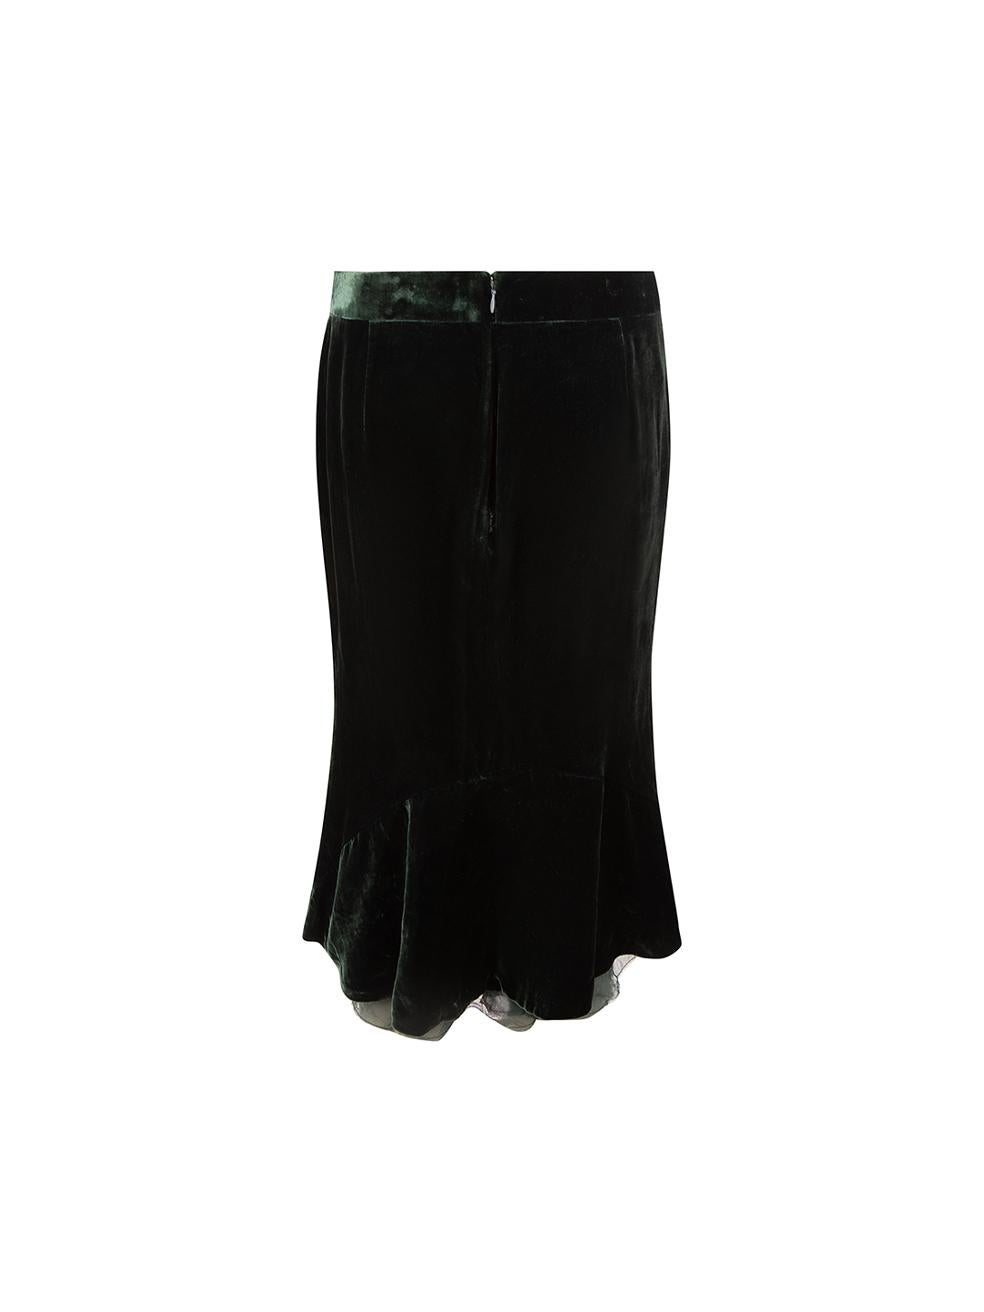 Black Tom Ford Dark Green Velvet Straight Skirt Size S